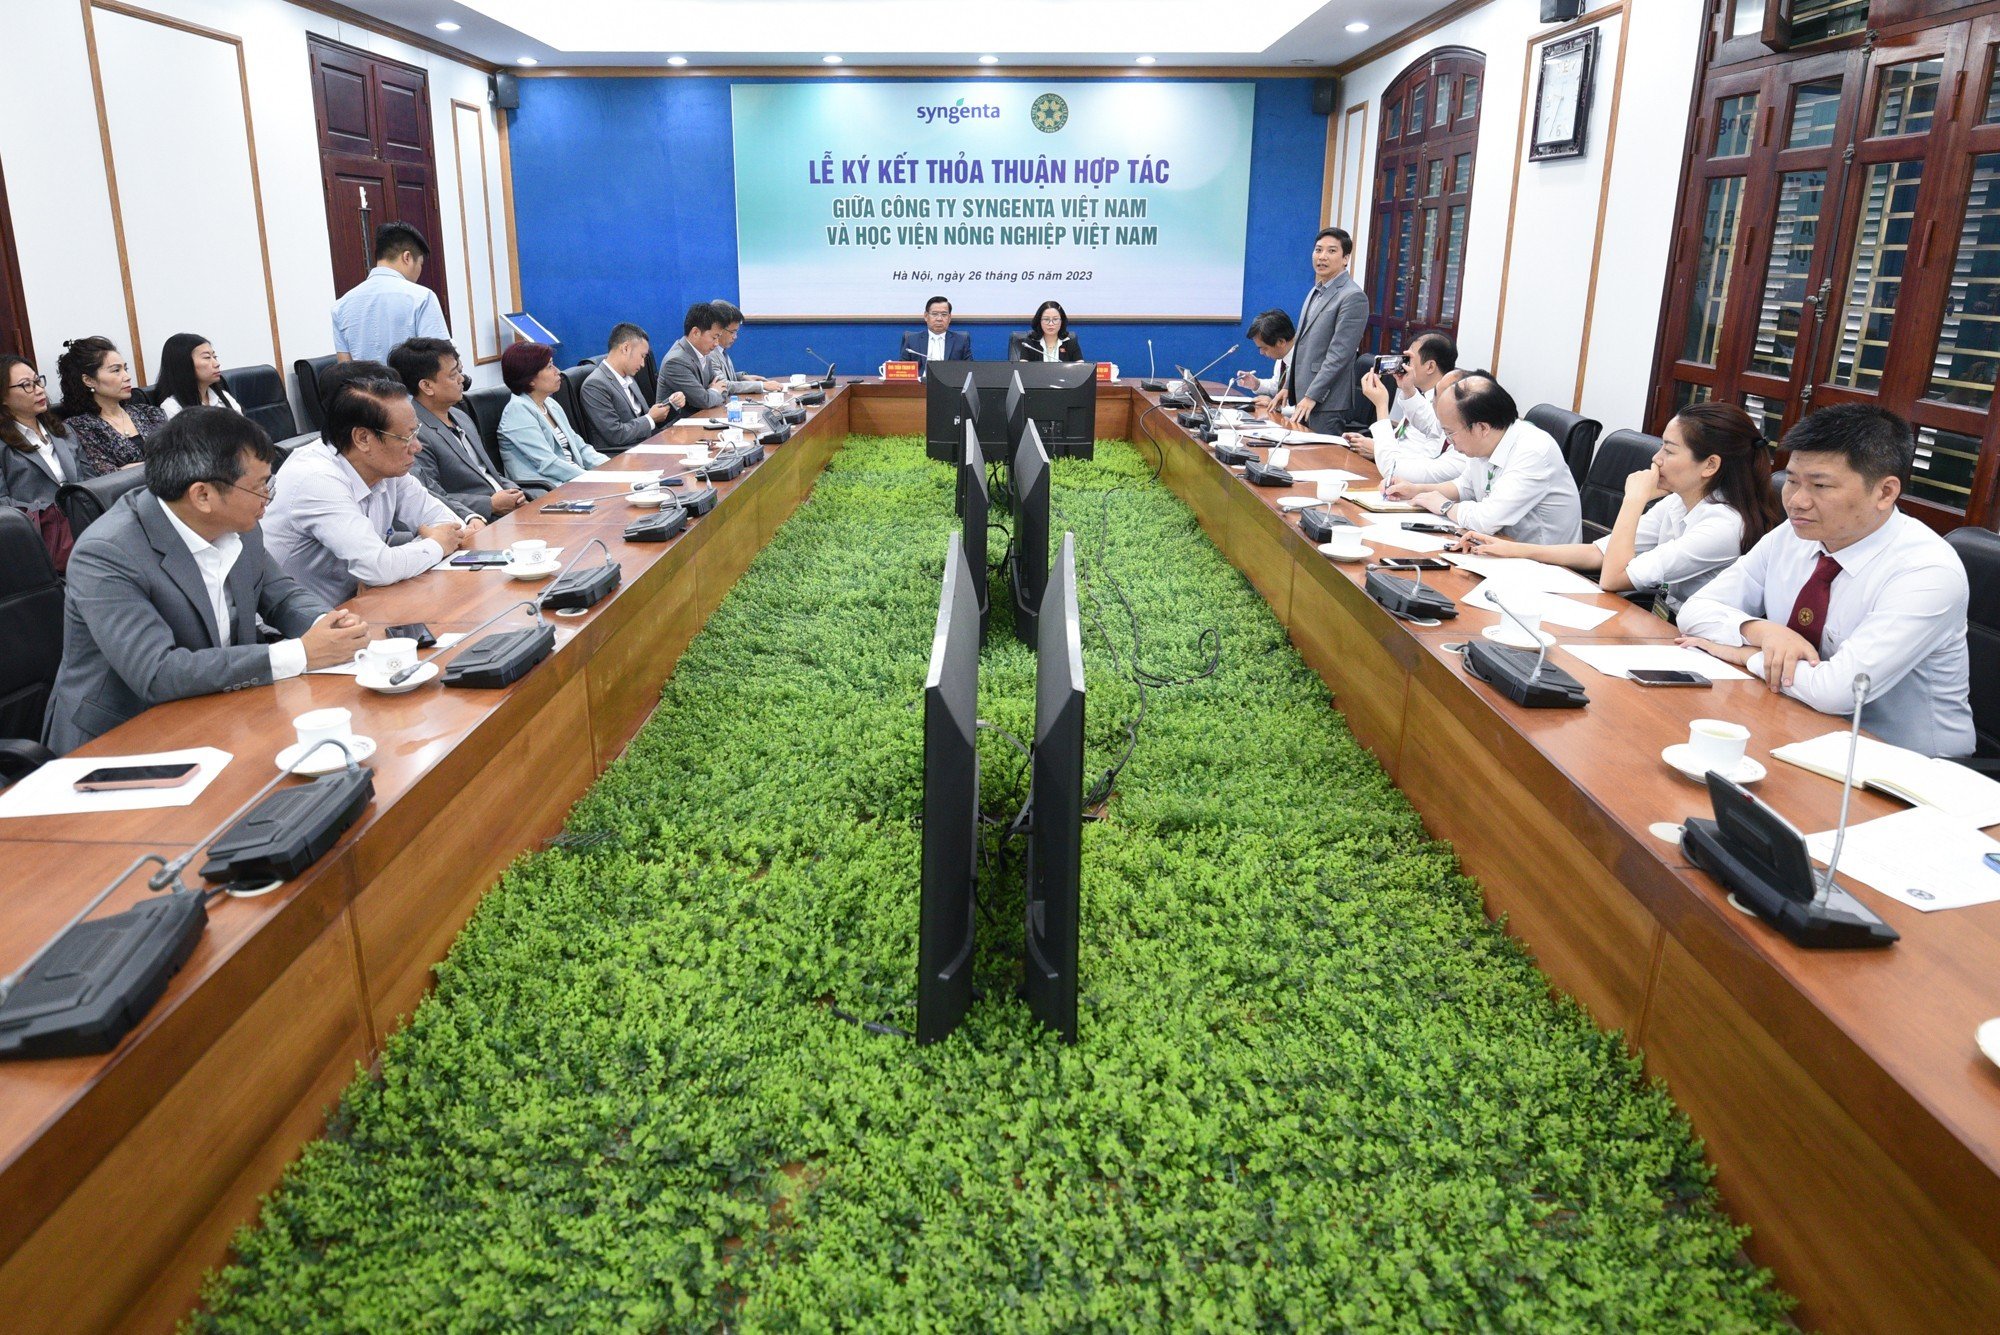 Syngenta Việt Nam và Học viện Nông nghiệp Việt Nam ký kết 'Thỏa thuận hợp tác về định hướng phát triển - thúc đẩy nguồn nhân lực chất lượng cao trong ngành Nông nghiệp'. Ảnh: Tùng Đinh.